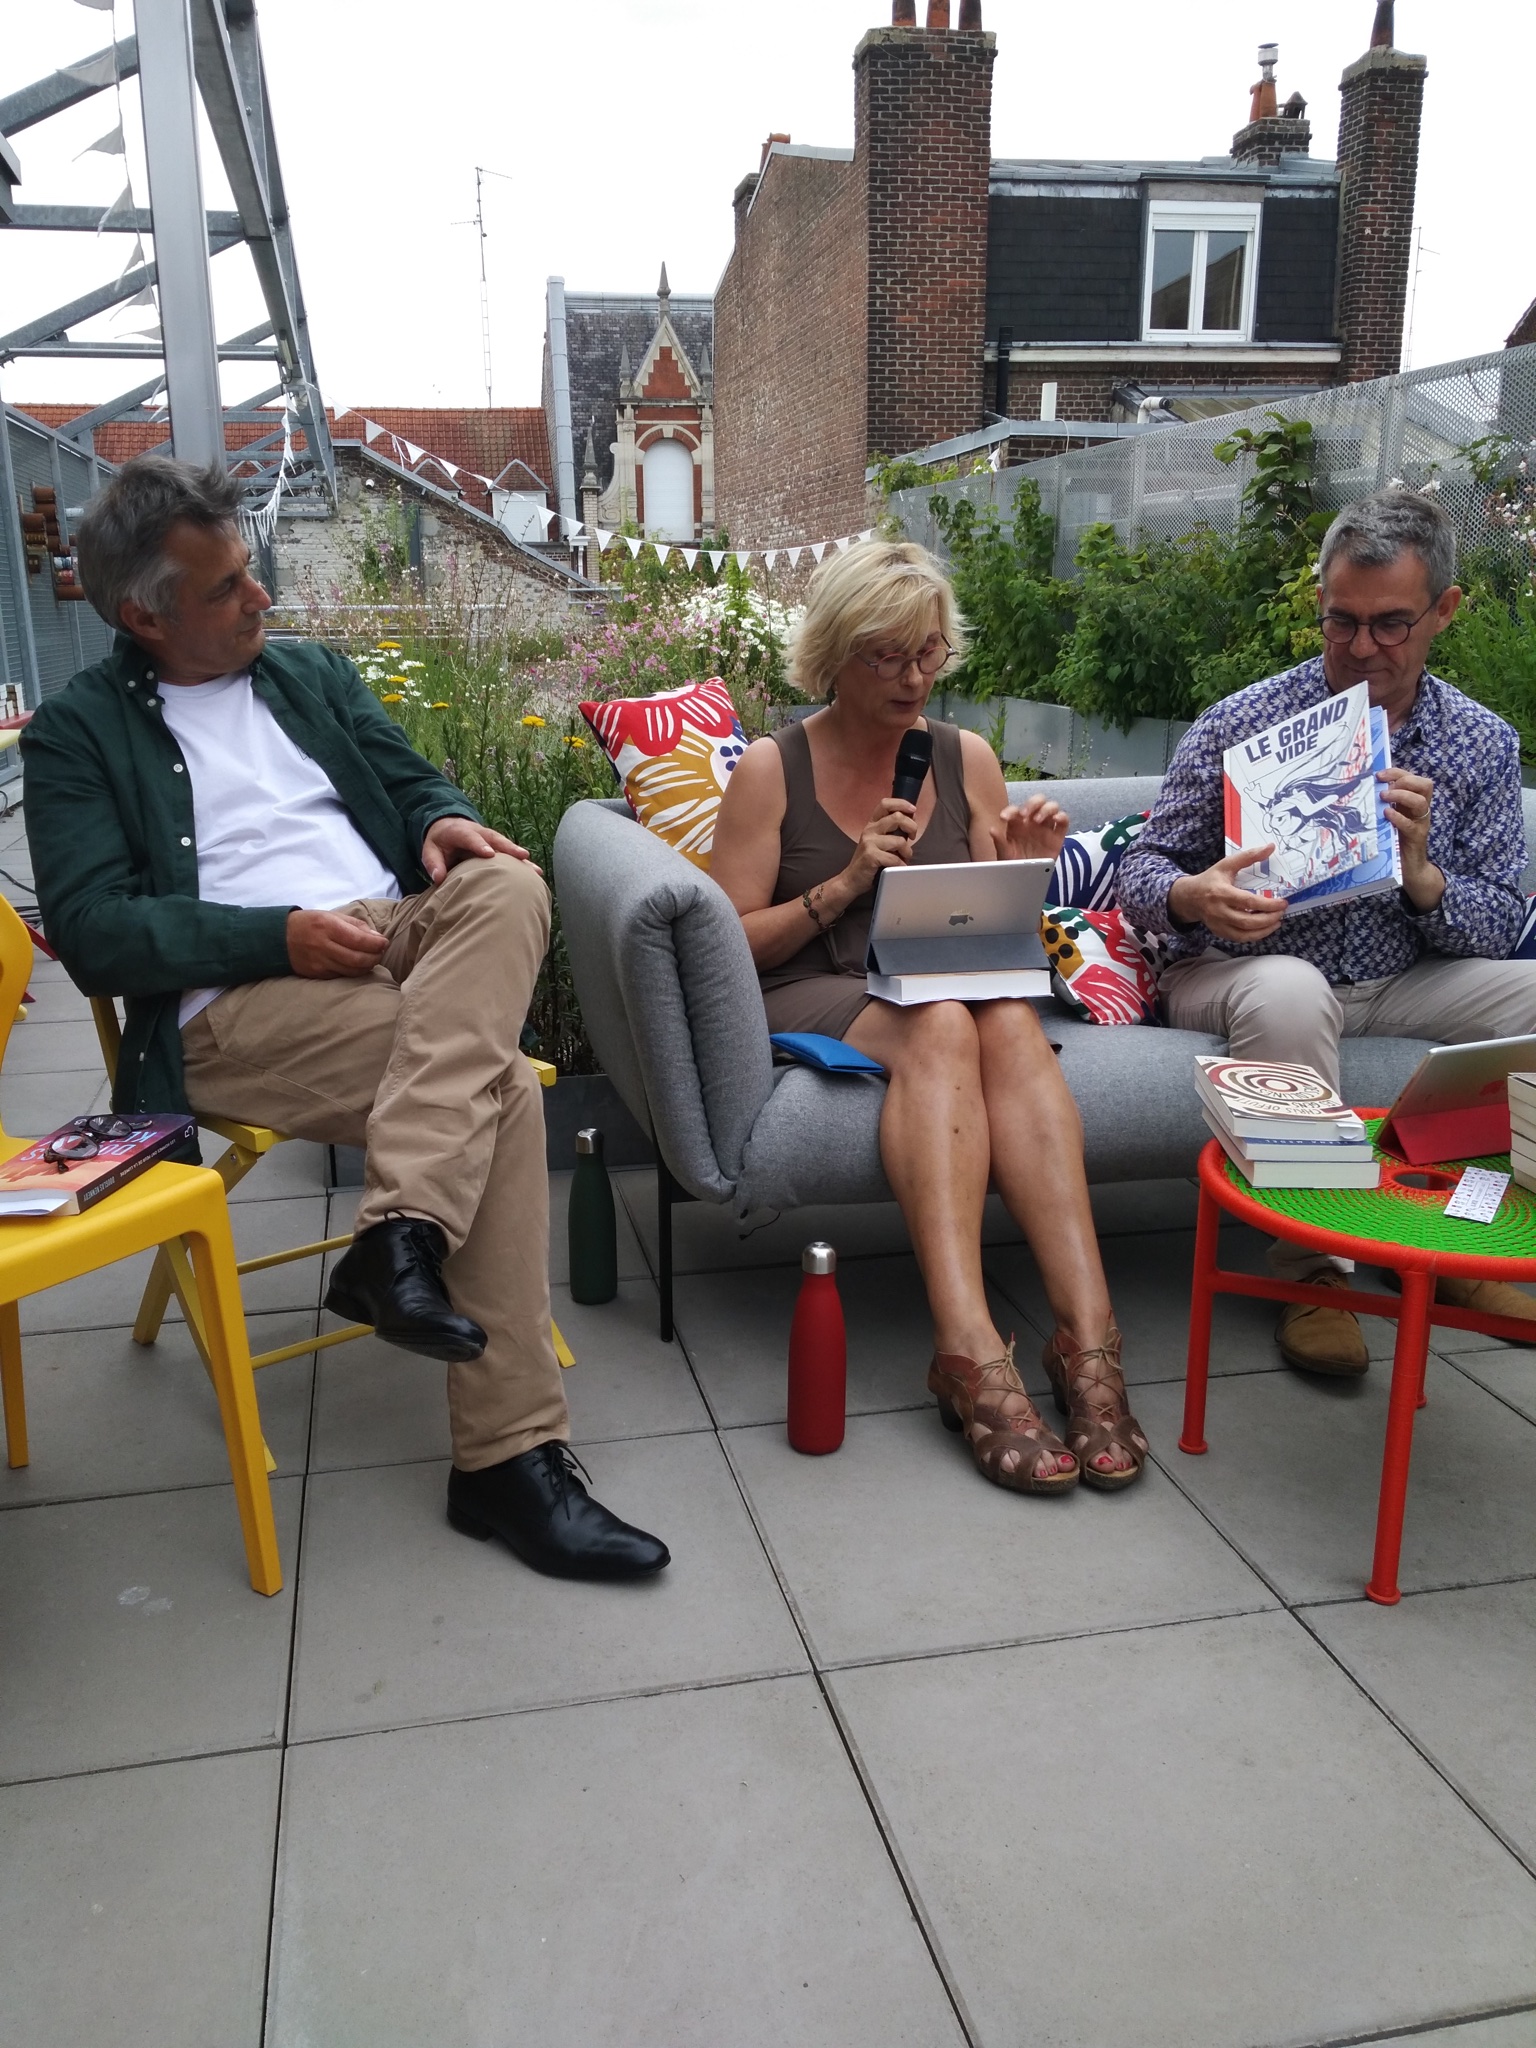 Deuxième rencontre sur la terrasse du HangArt Créatif : temps idéal et conseils de lectures pour l’été.